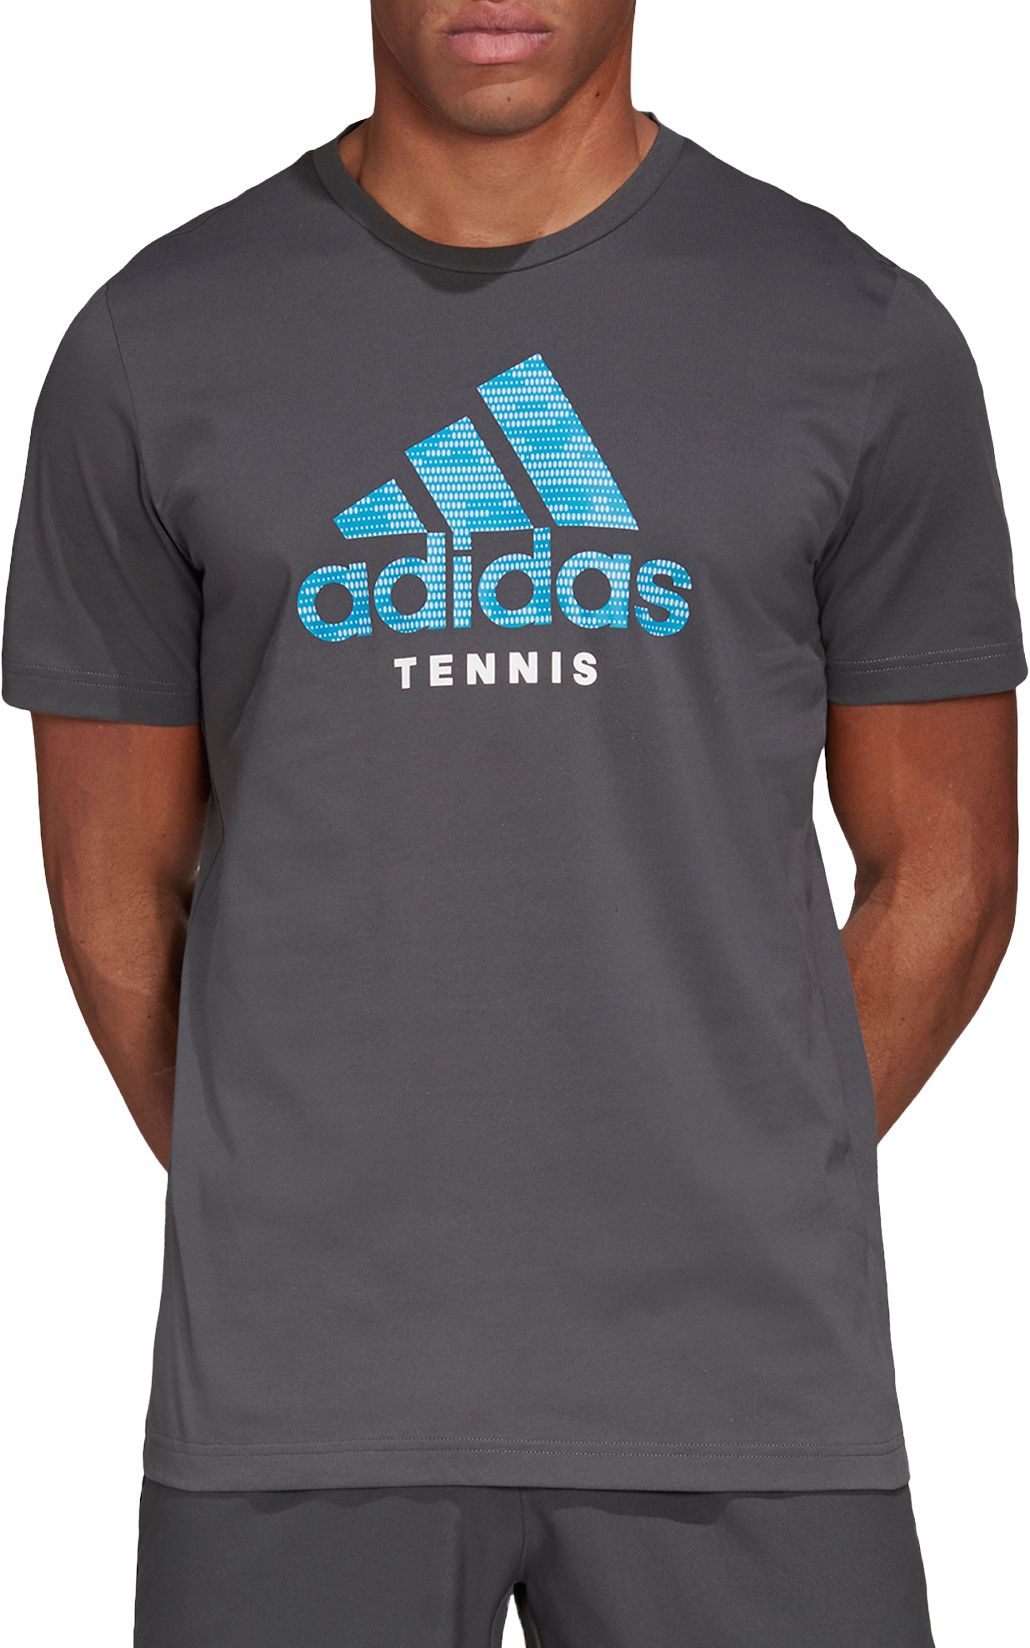 adidas tennis tee shirts